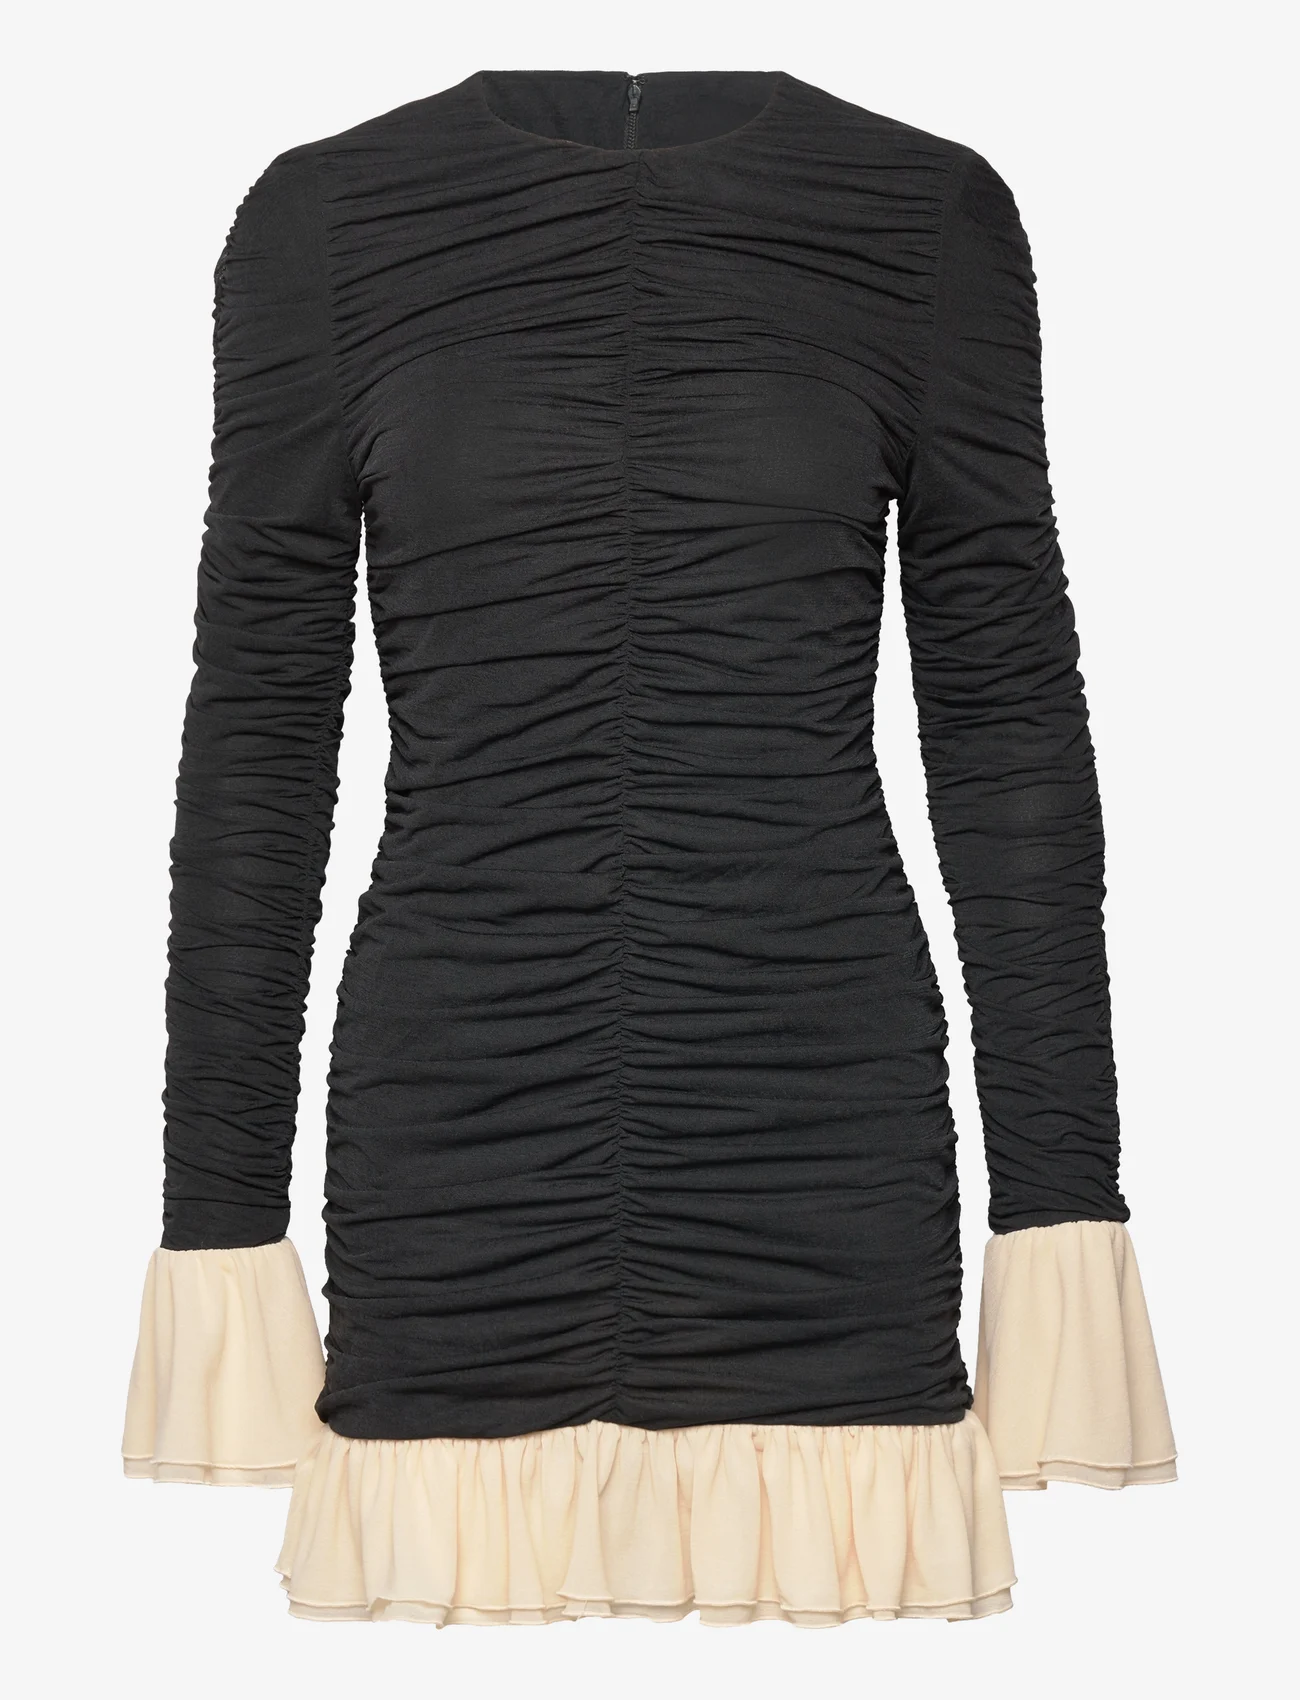 ROTATE Birger Christensen - Mini Ruched Ls Dress - festklær til outlet-priser - 1000 black comb. - 0